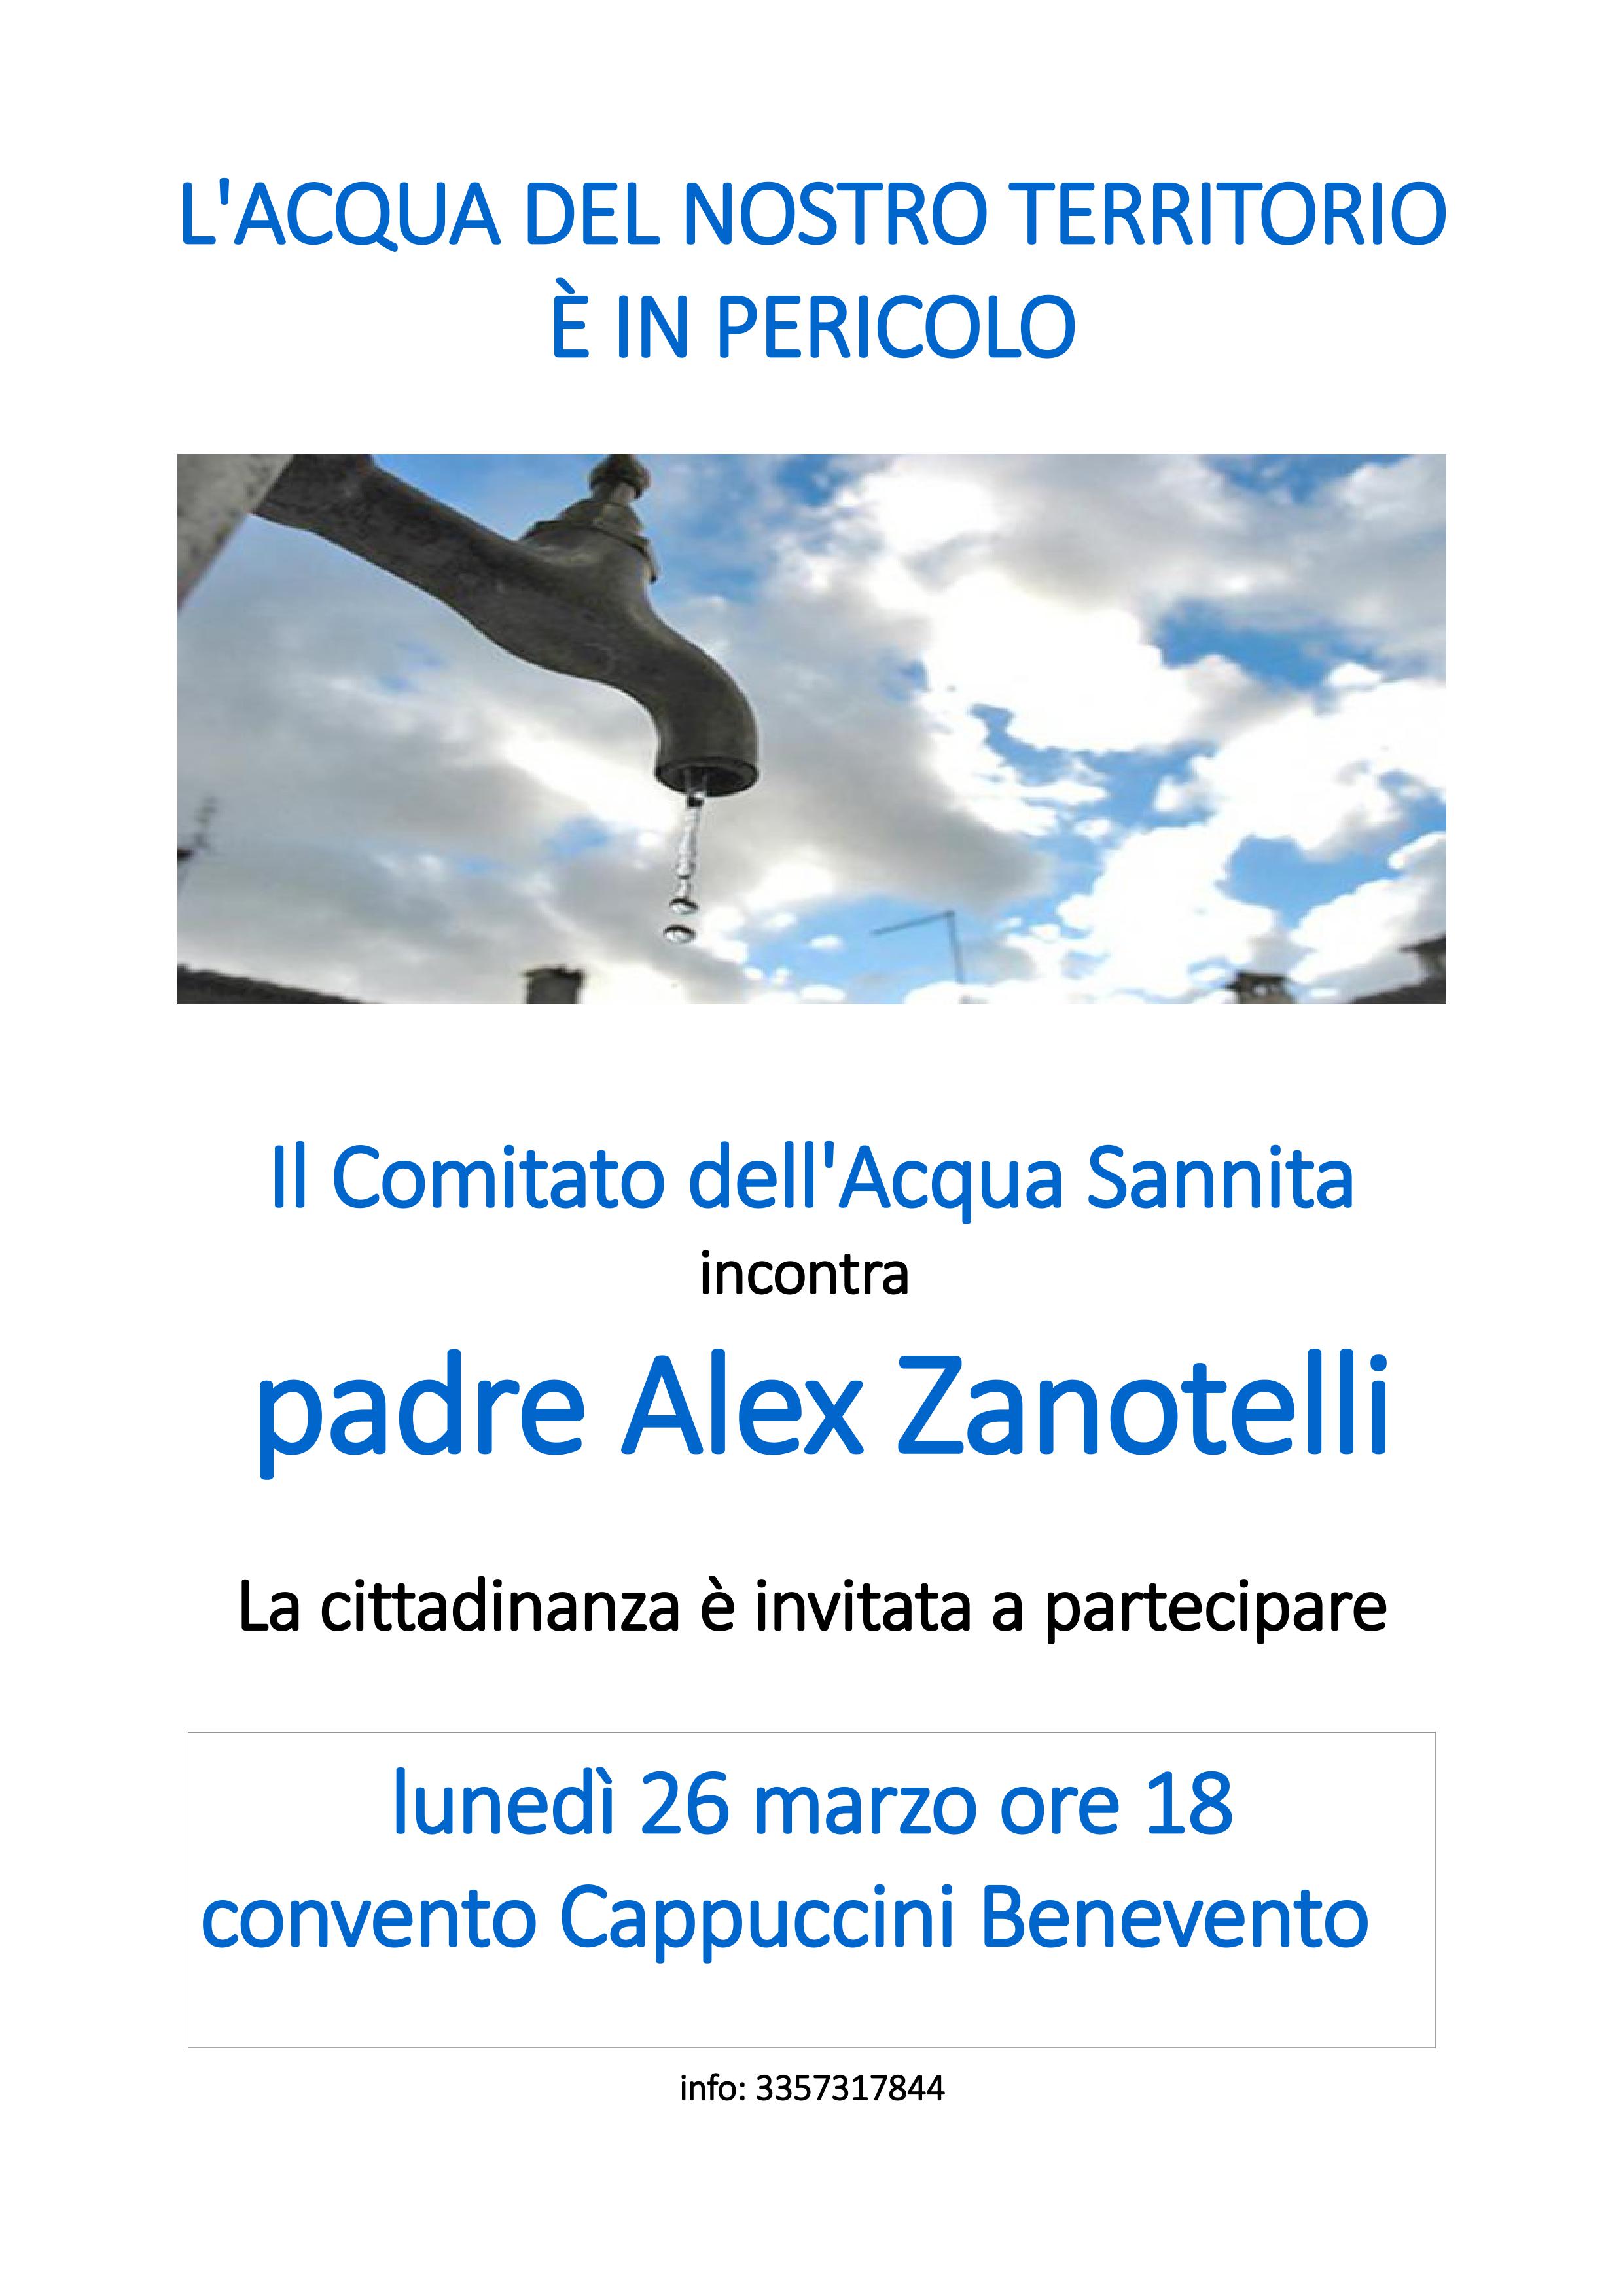 Padre Alex Zanotelli a Benevento per incontro su “L’acqua del nostro territorio è in pericolo”